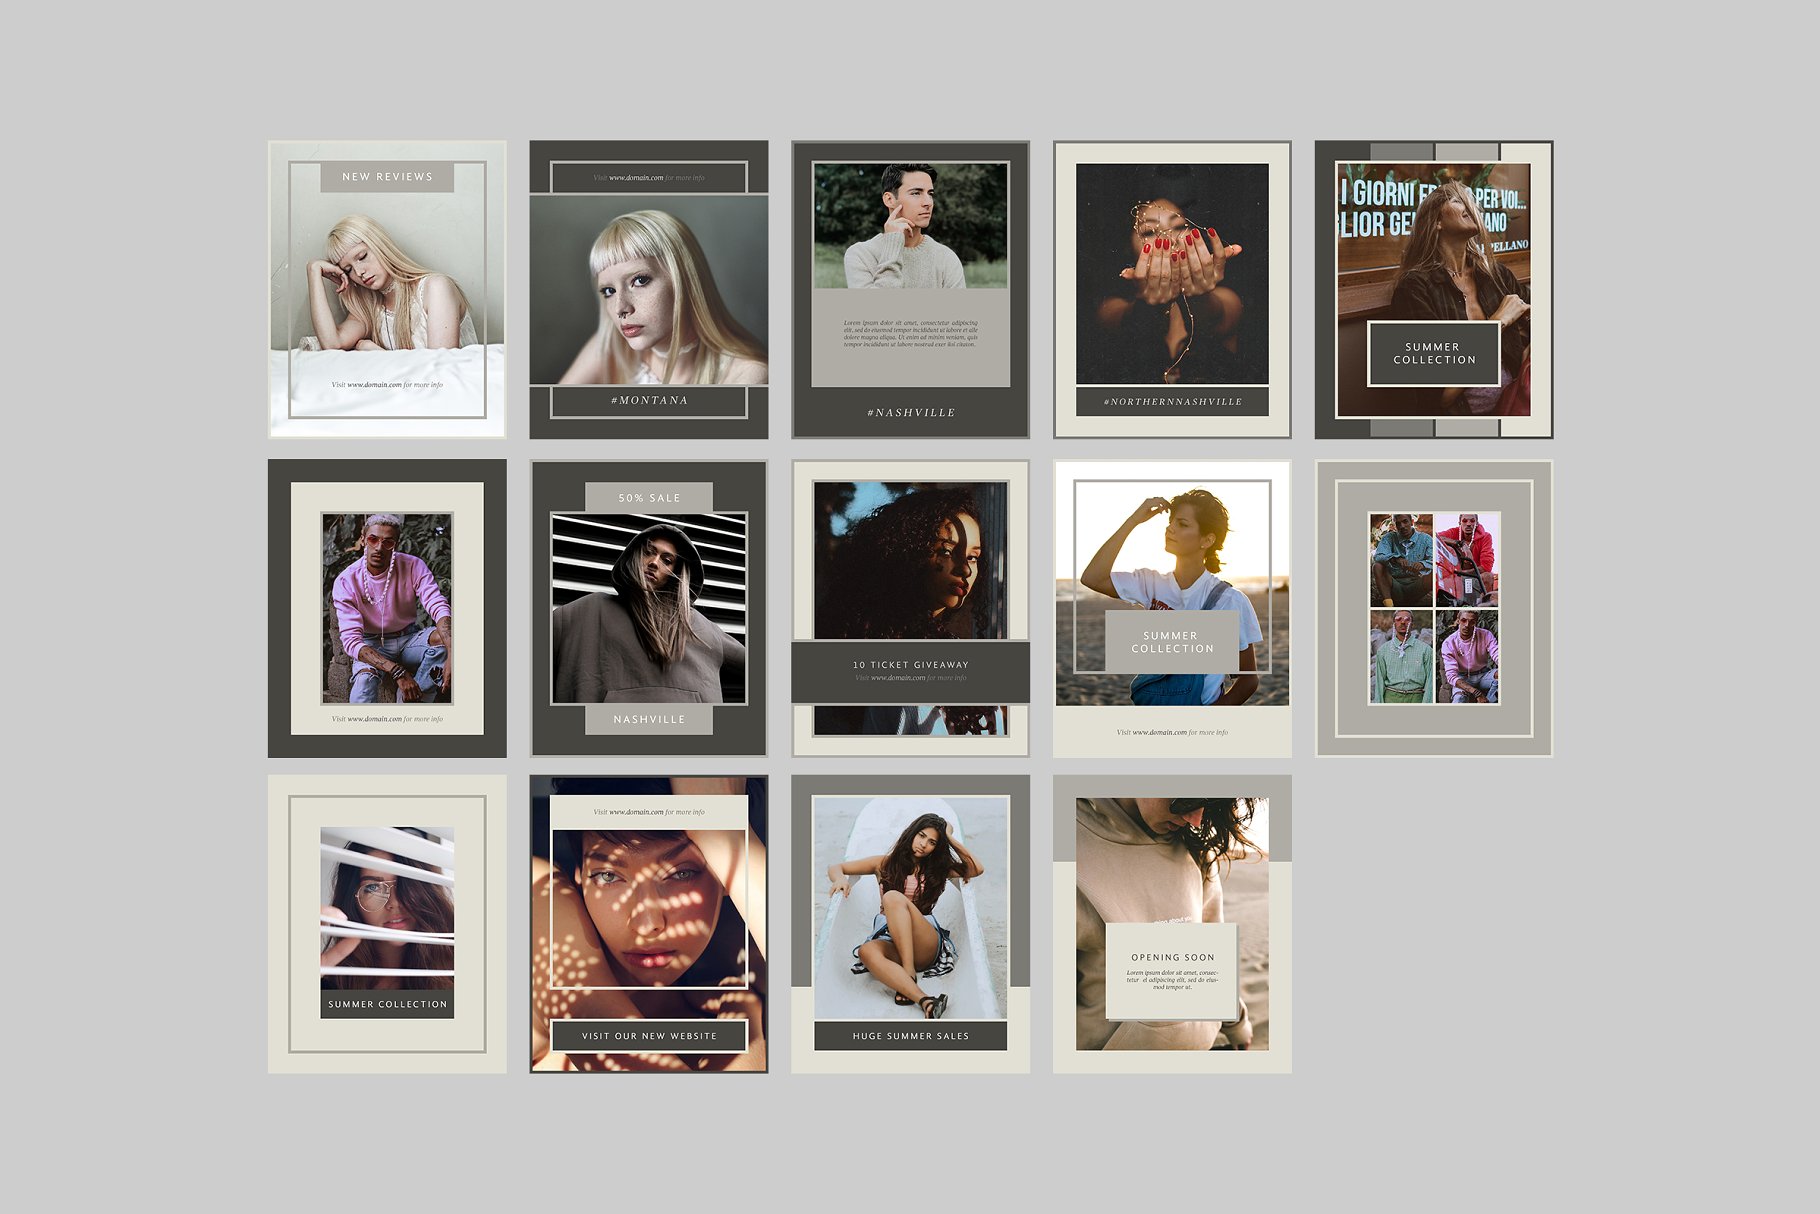 时尚模特摄影主题社交媒体贴图模板第一素材精选 Nashville Social Media Templates插图(7)